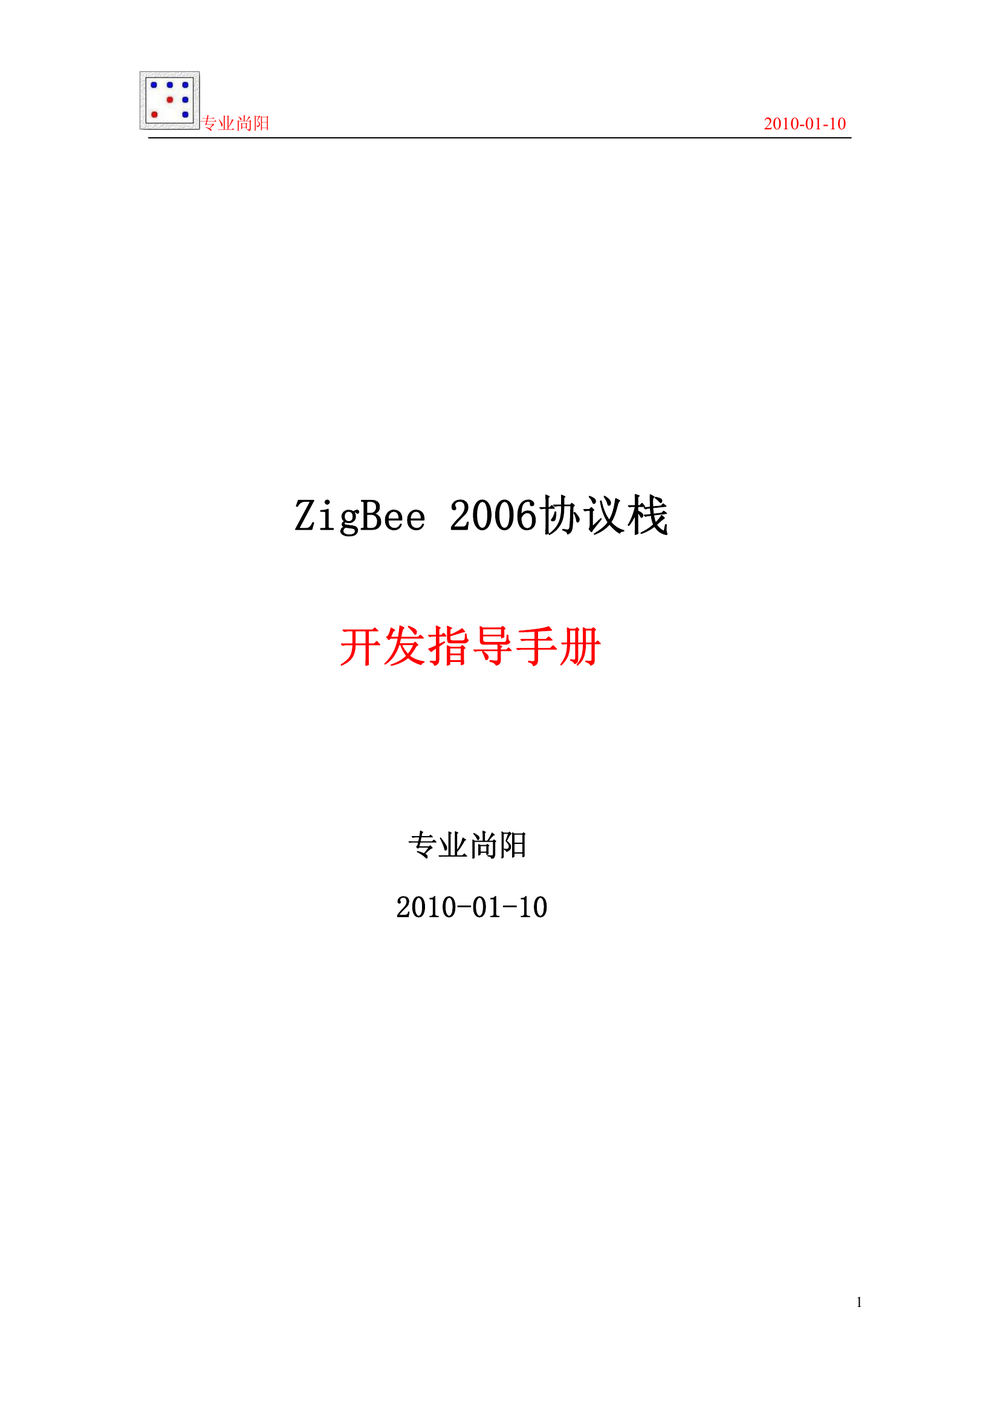 ZigBee 2006协议栈_开发指导手册_专业尚阳.PDF-第1页.png